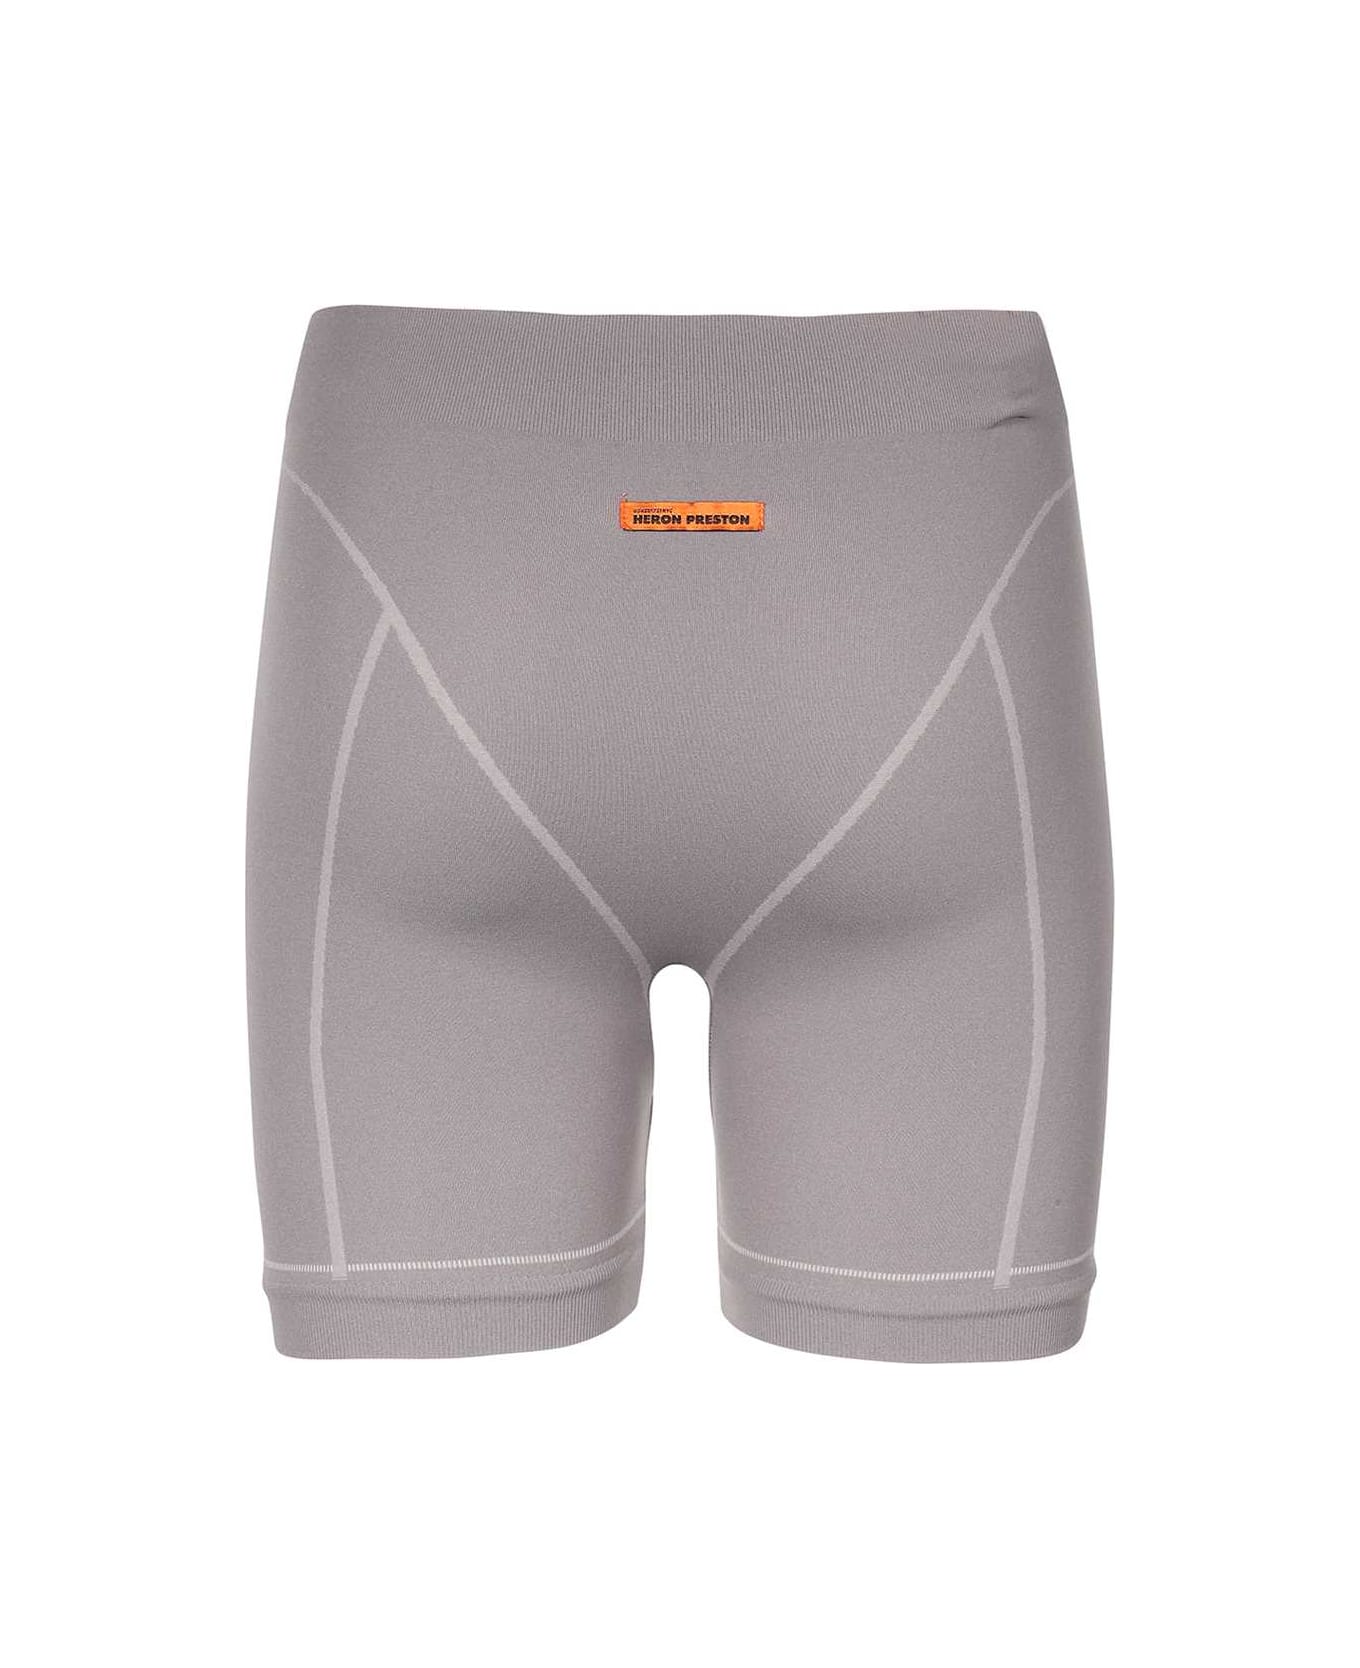 HERON PRESTON Nylon Shorts - grey